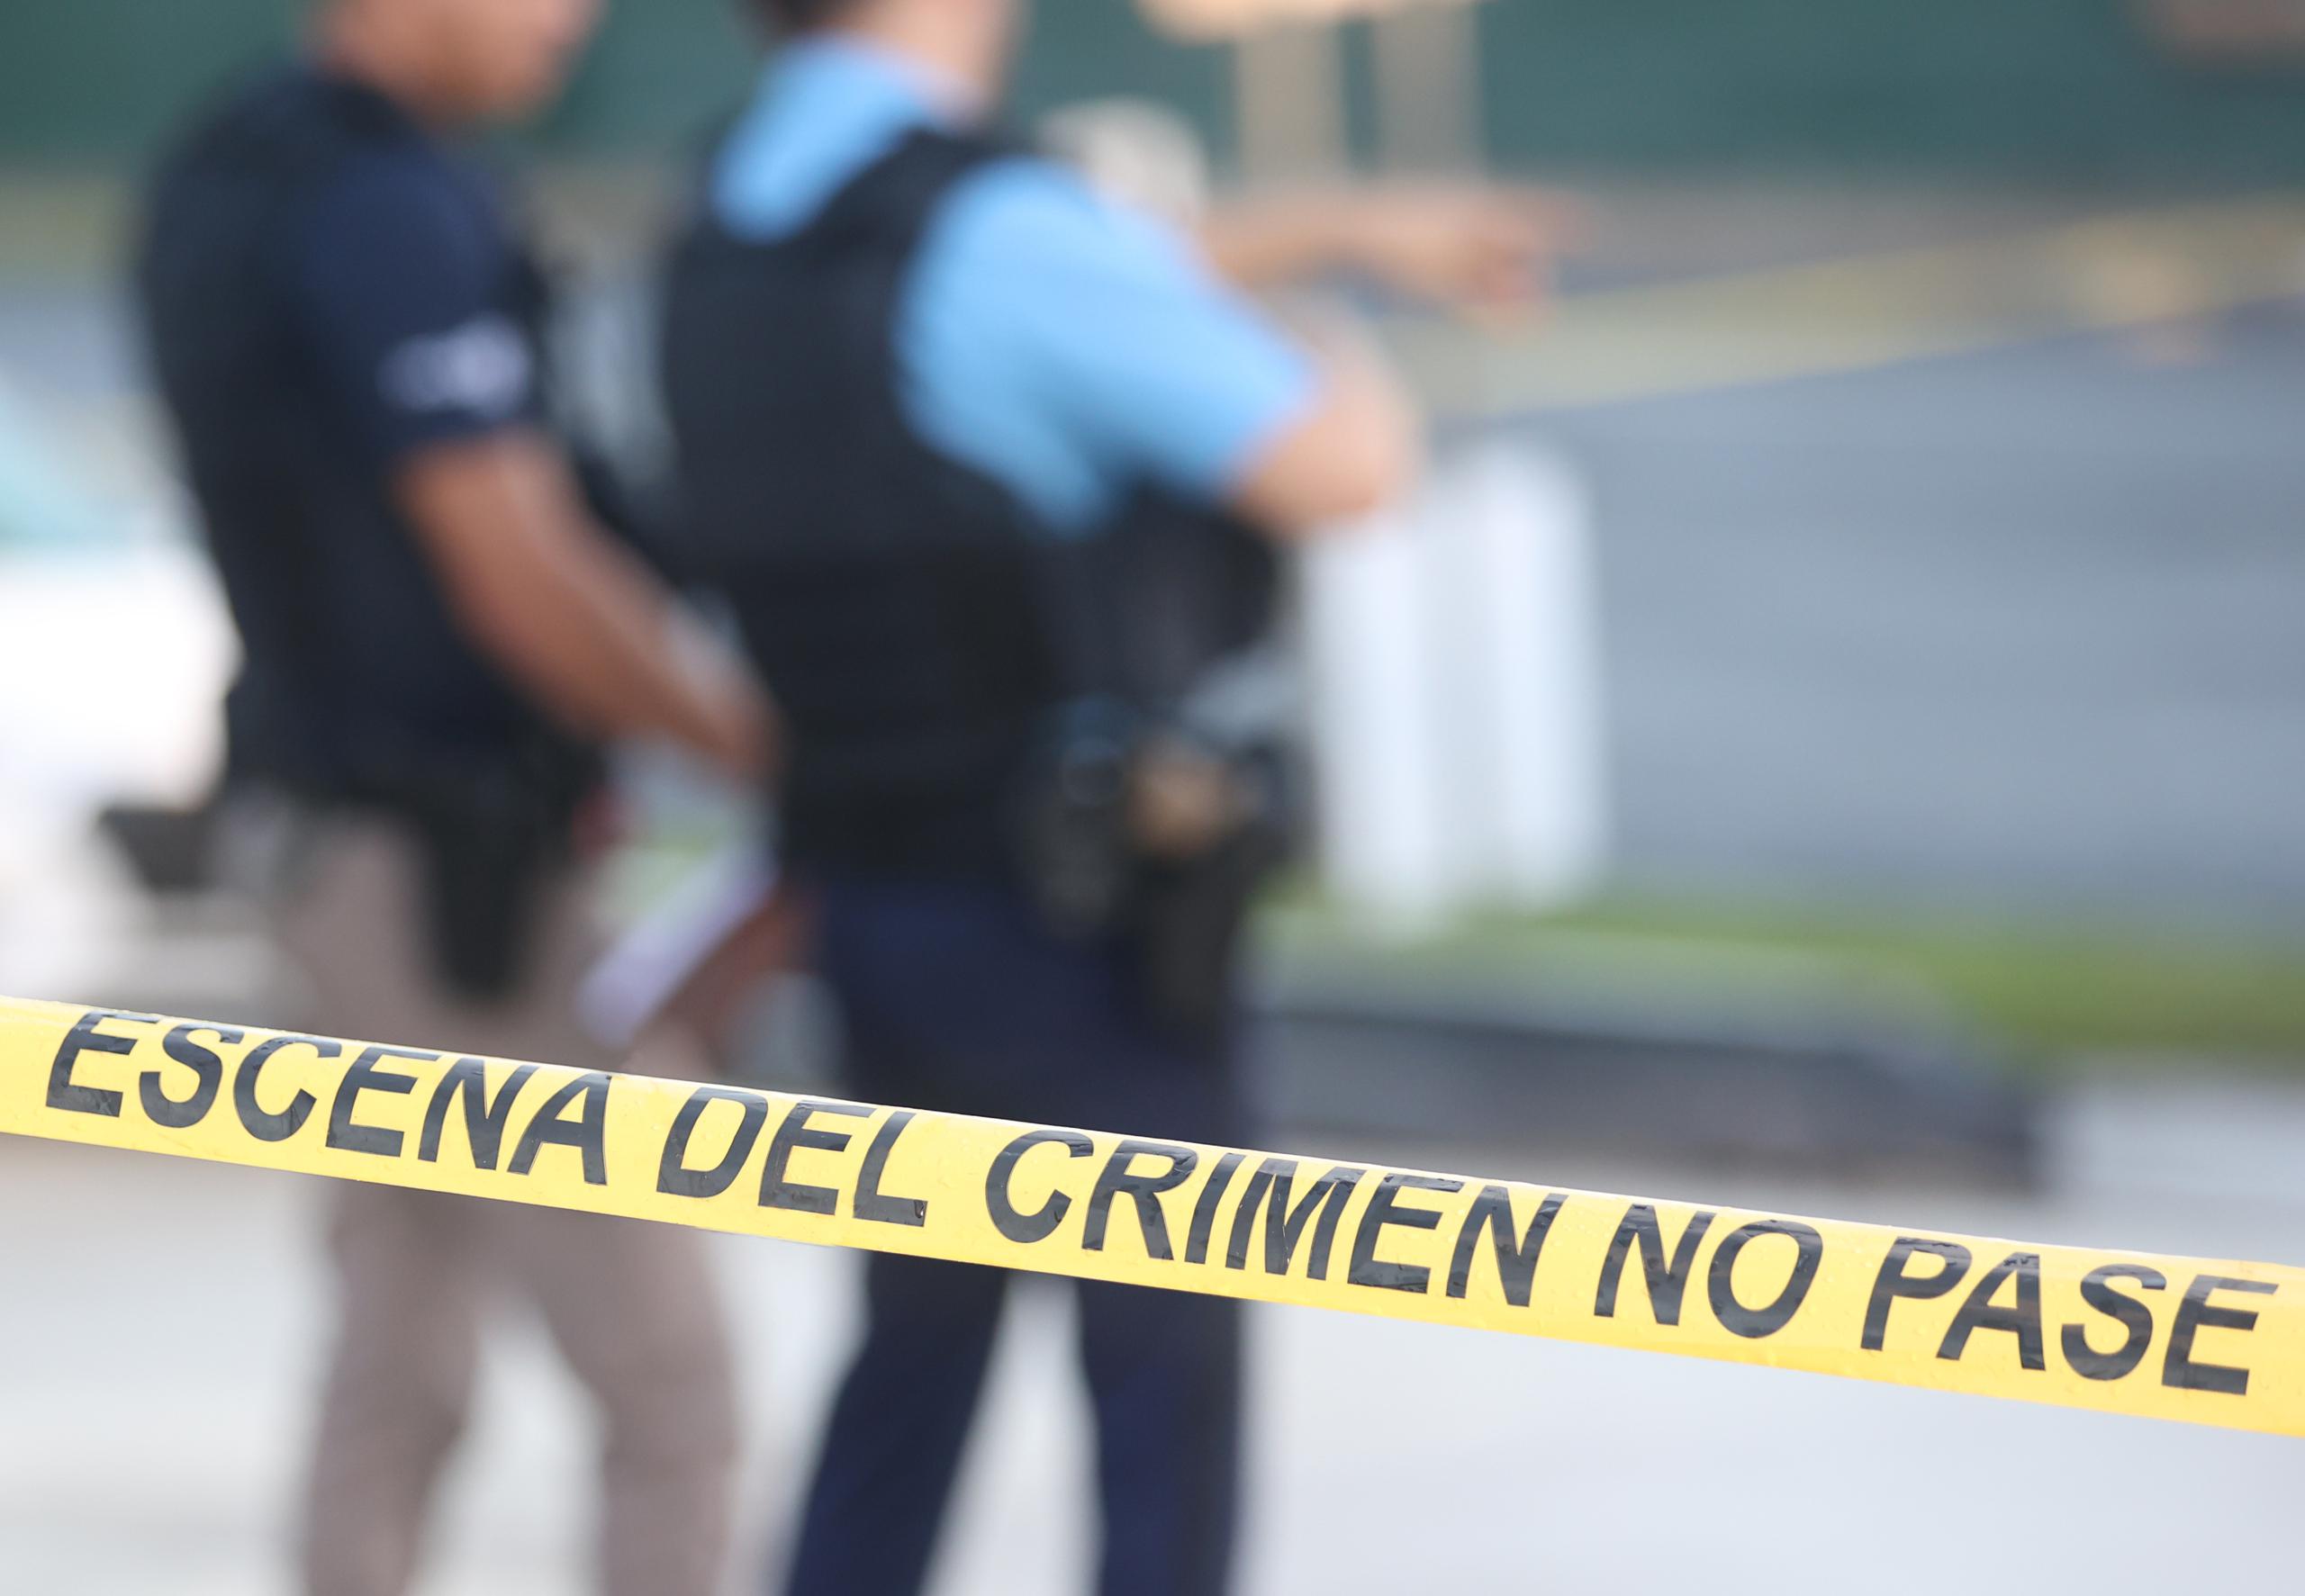 La División de Homicidios de San Juan junto al fiscal de turno investigan la escena.